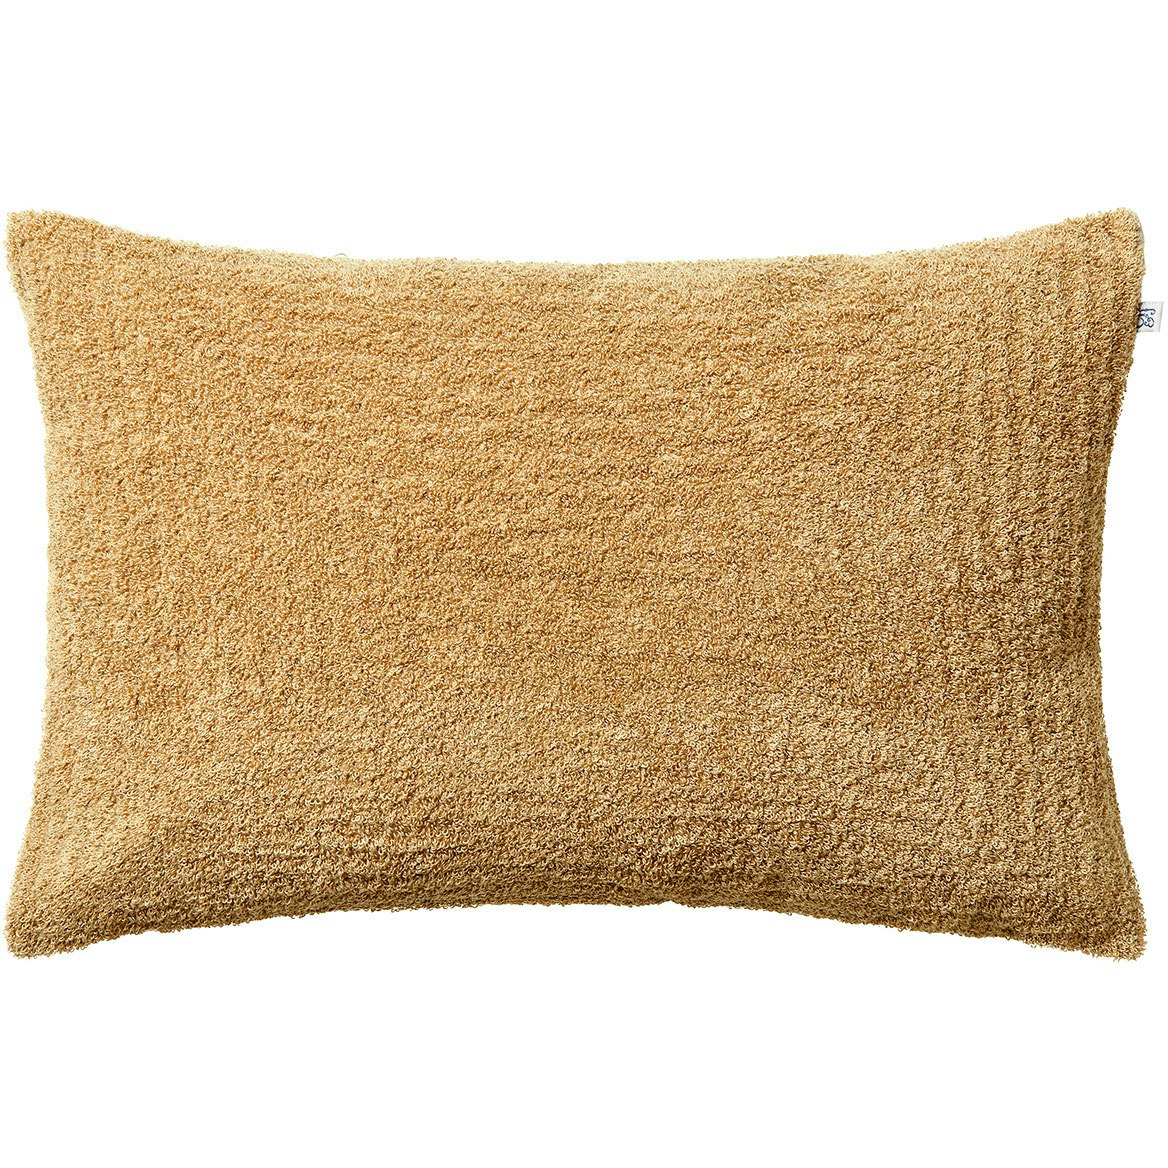 Mani Cushion Cover Bouclé 40x60 cm, Sand